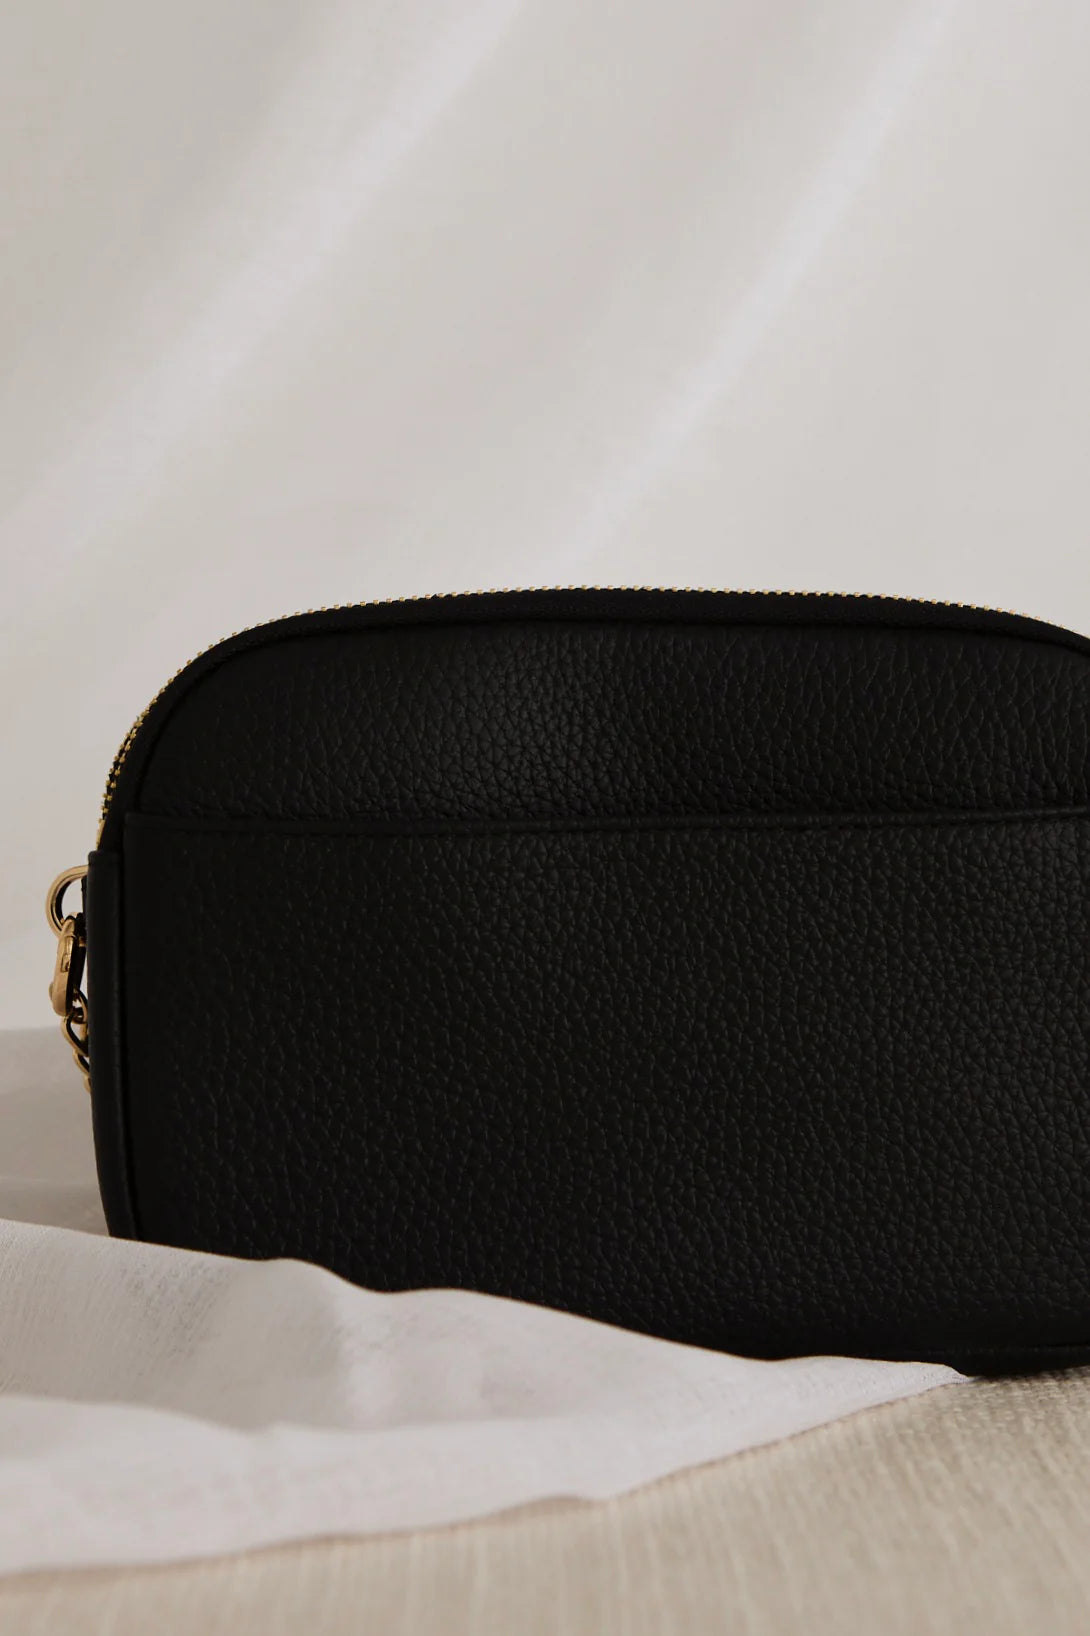 Venice Black Leather Double Pouch Bag